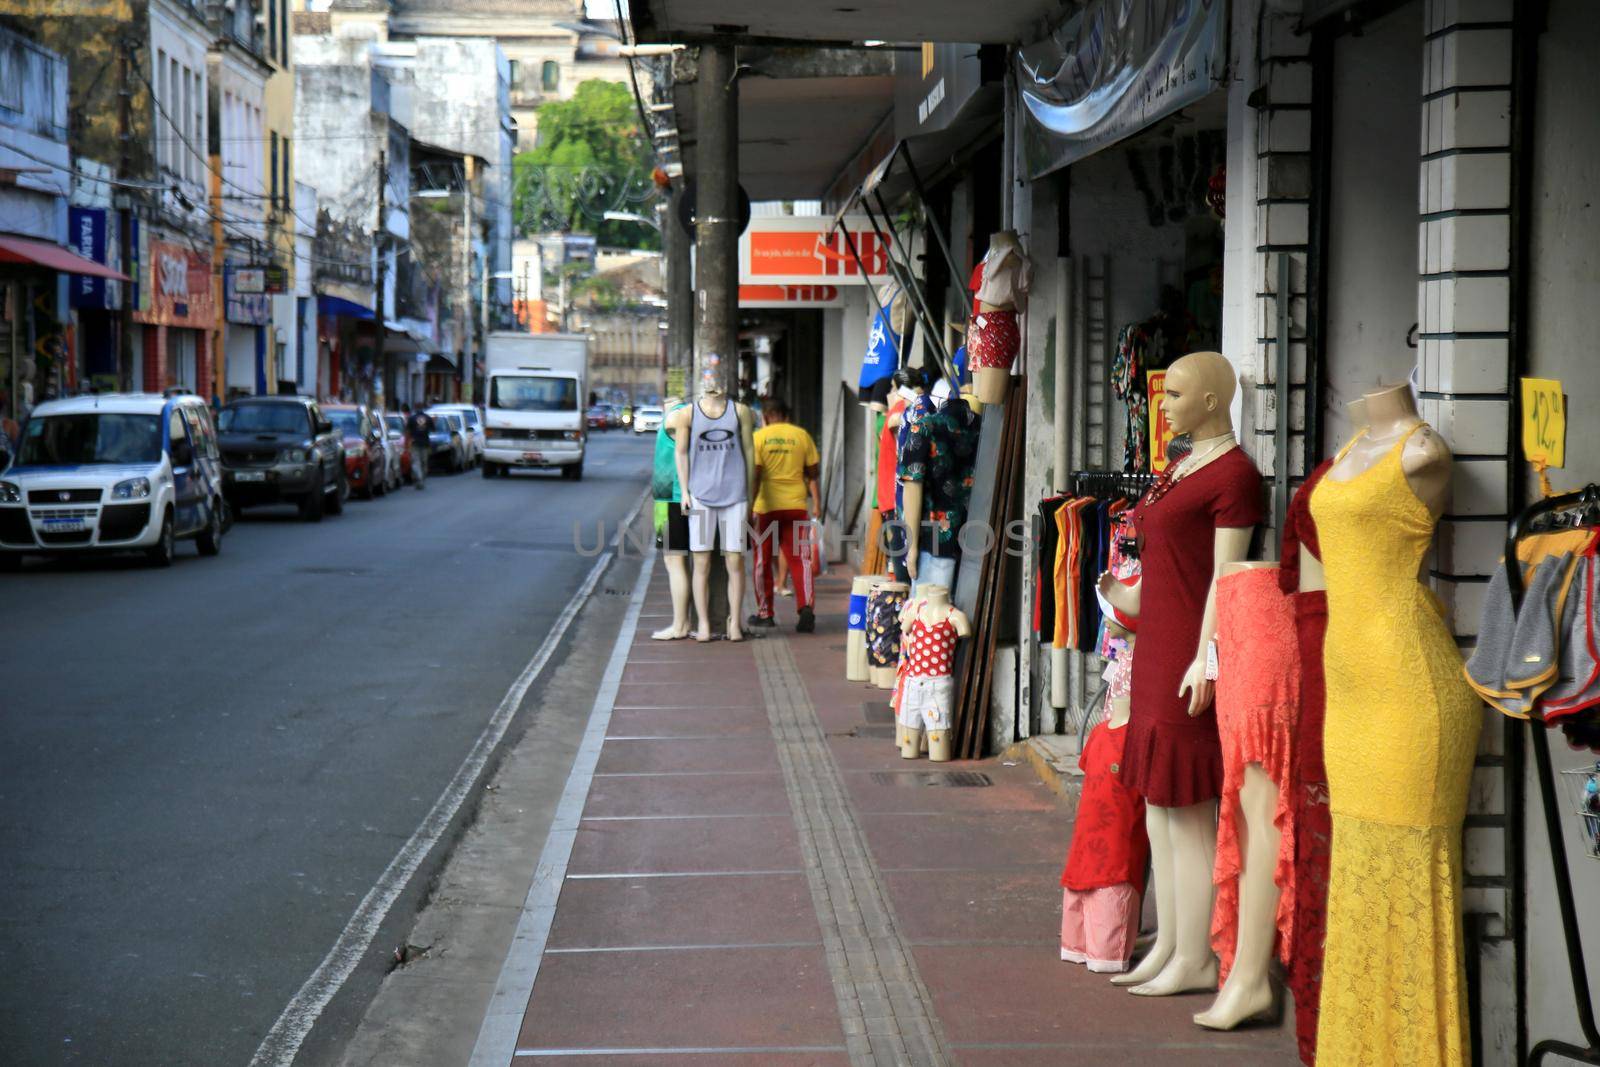 salvador, bahia, brazil - december 16, 2020: view of street shops in Baixa dos Sapateiros in downtown Salvador.

